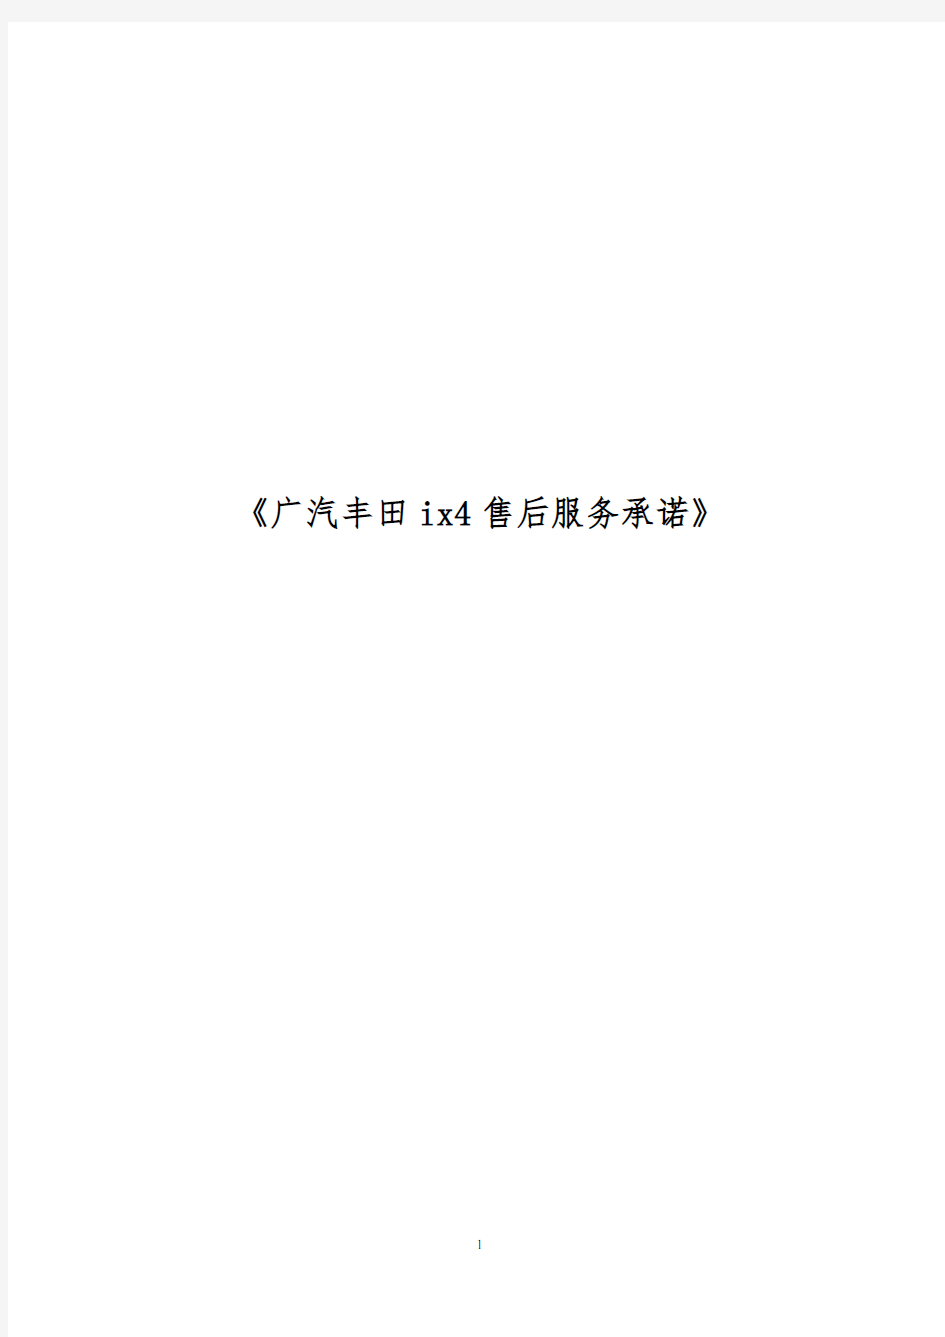 《广汽丰田ix4售后服务承诺》